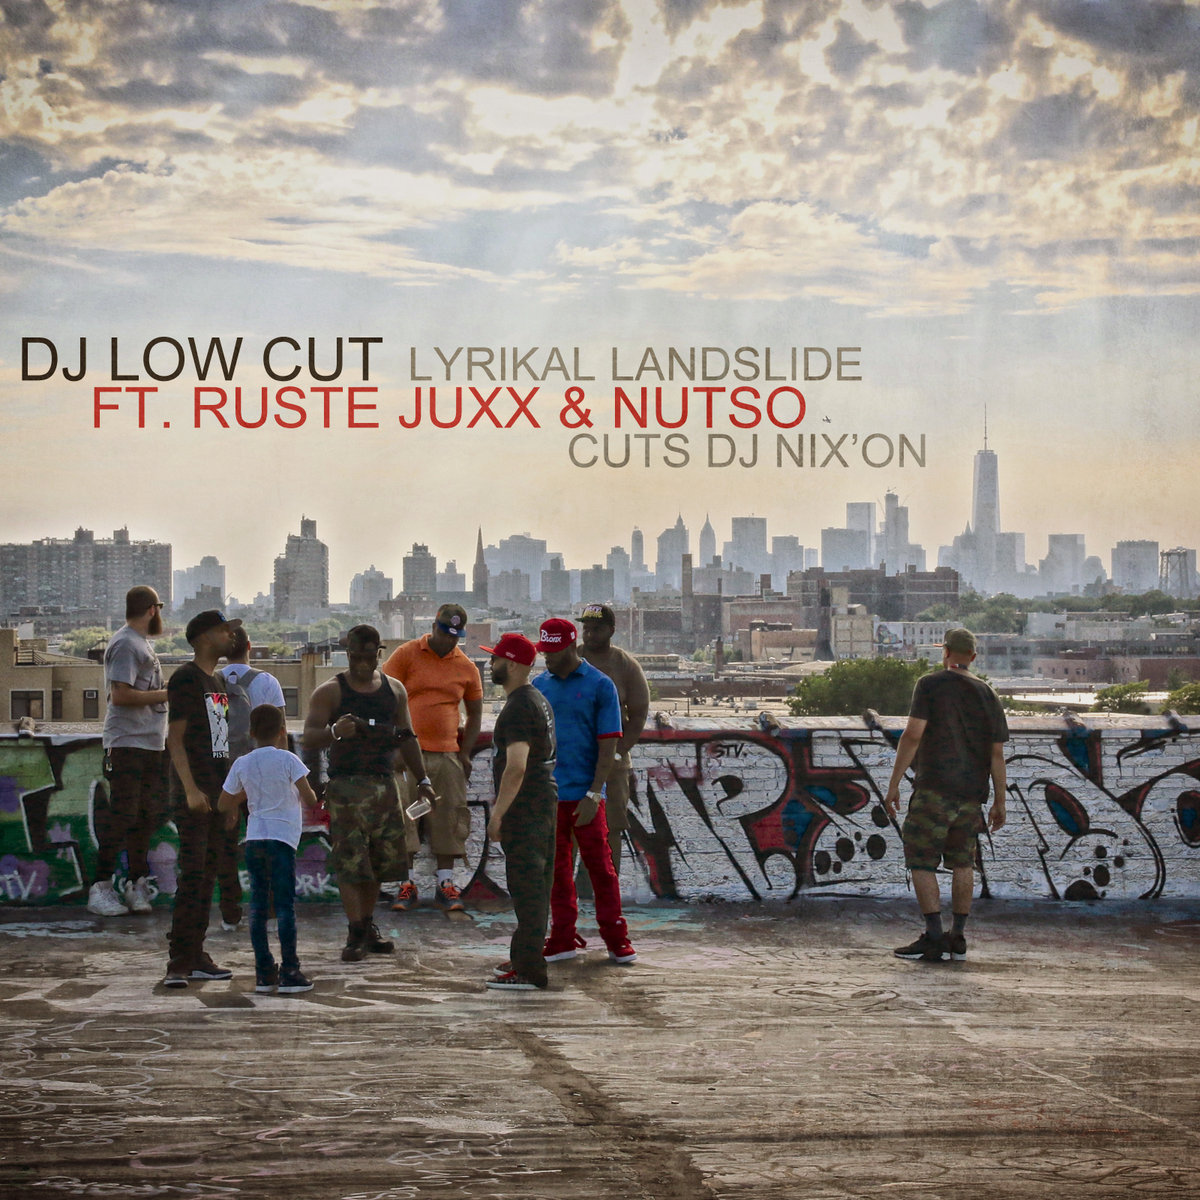 Low Cut feat Ruste Juxx & Nutso - Lyrikal Landslide (Cut Nix'on)